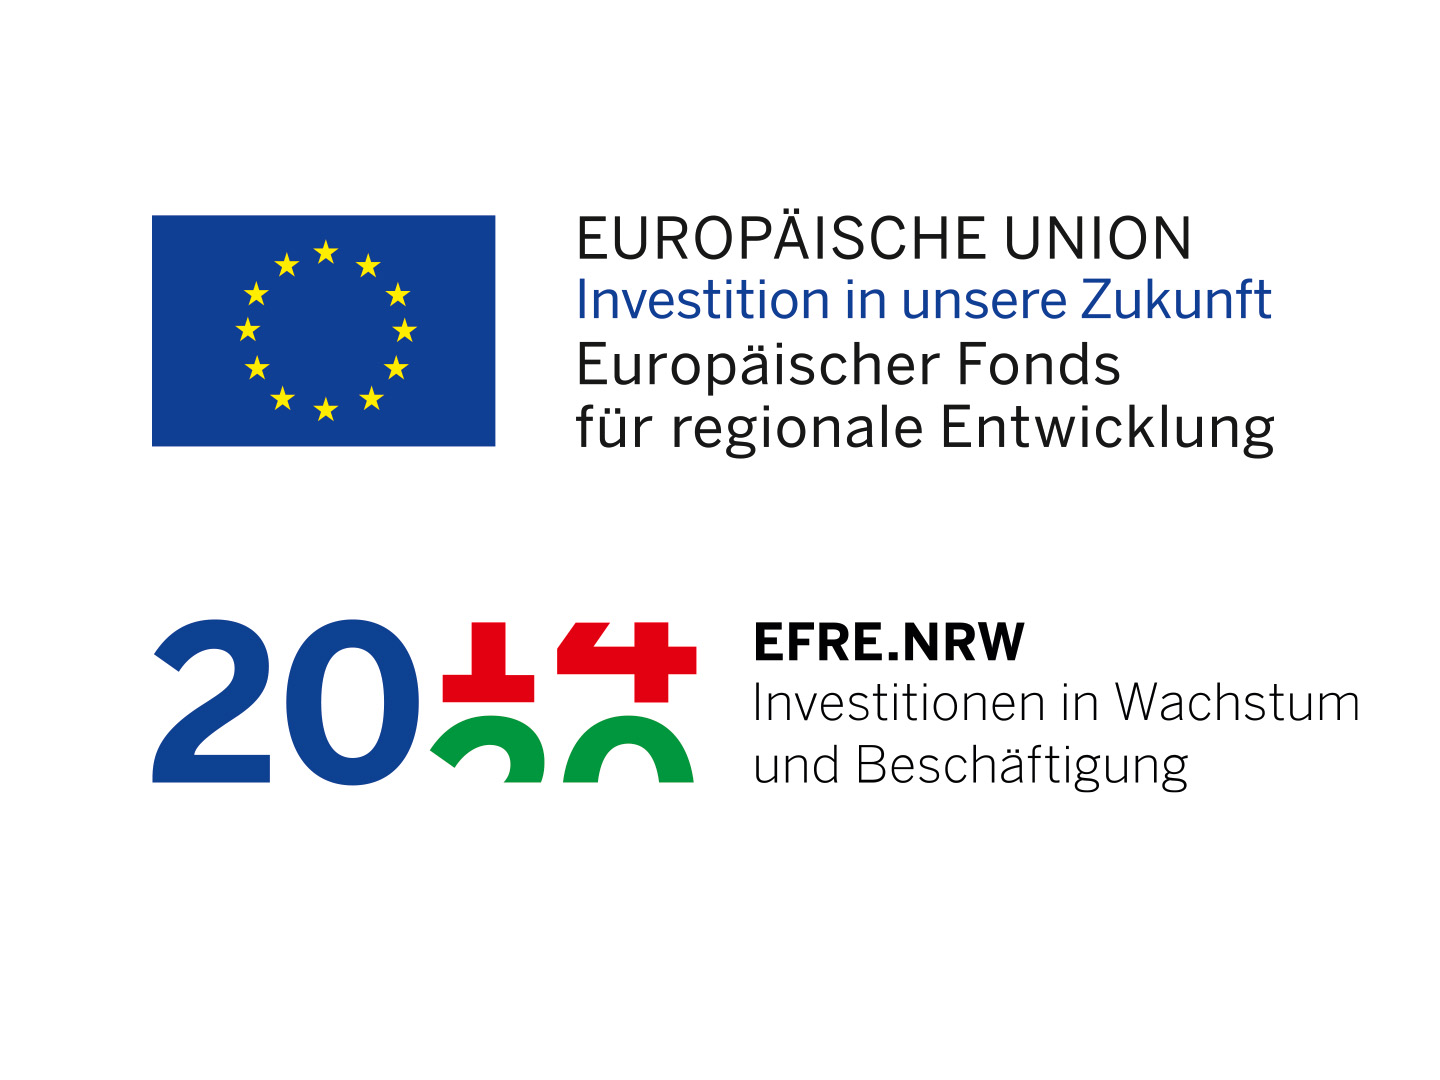 Europäische Union + EFRE.NRW